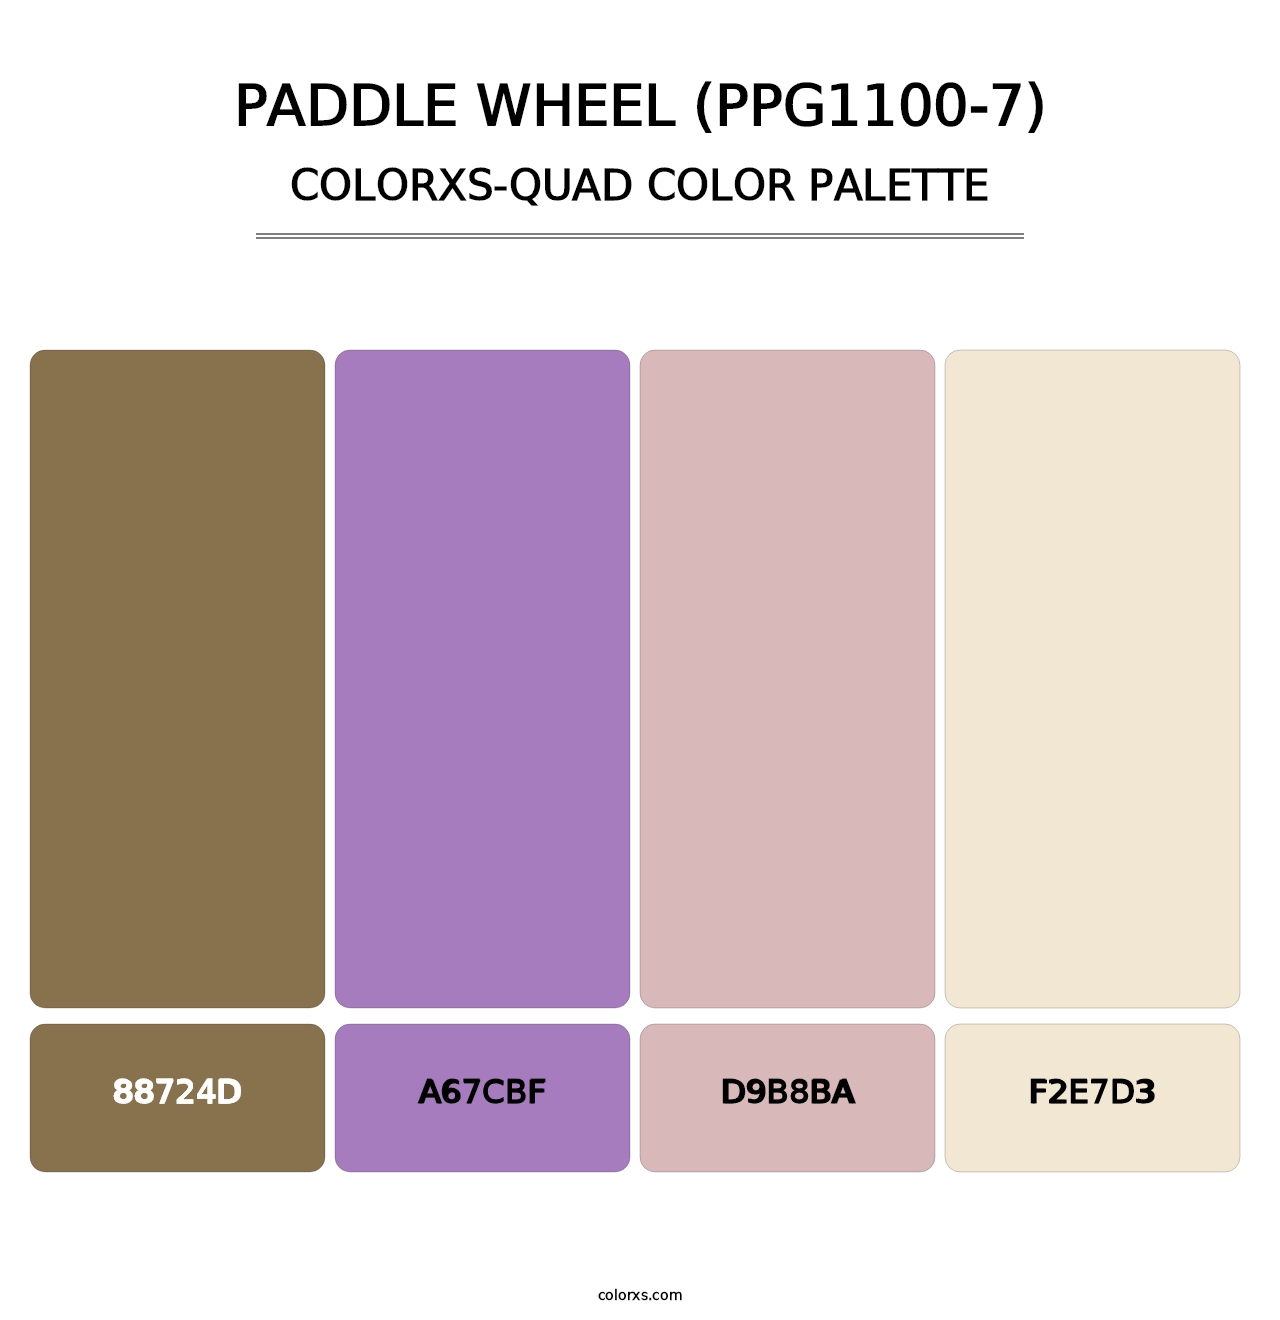 Paddle Wheel (PPG1100-7) - Colorxs Quad Palette